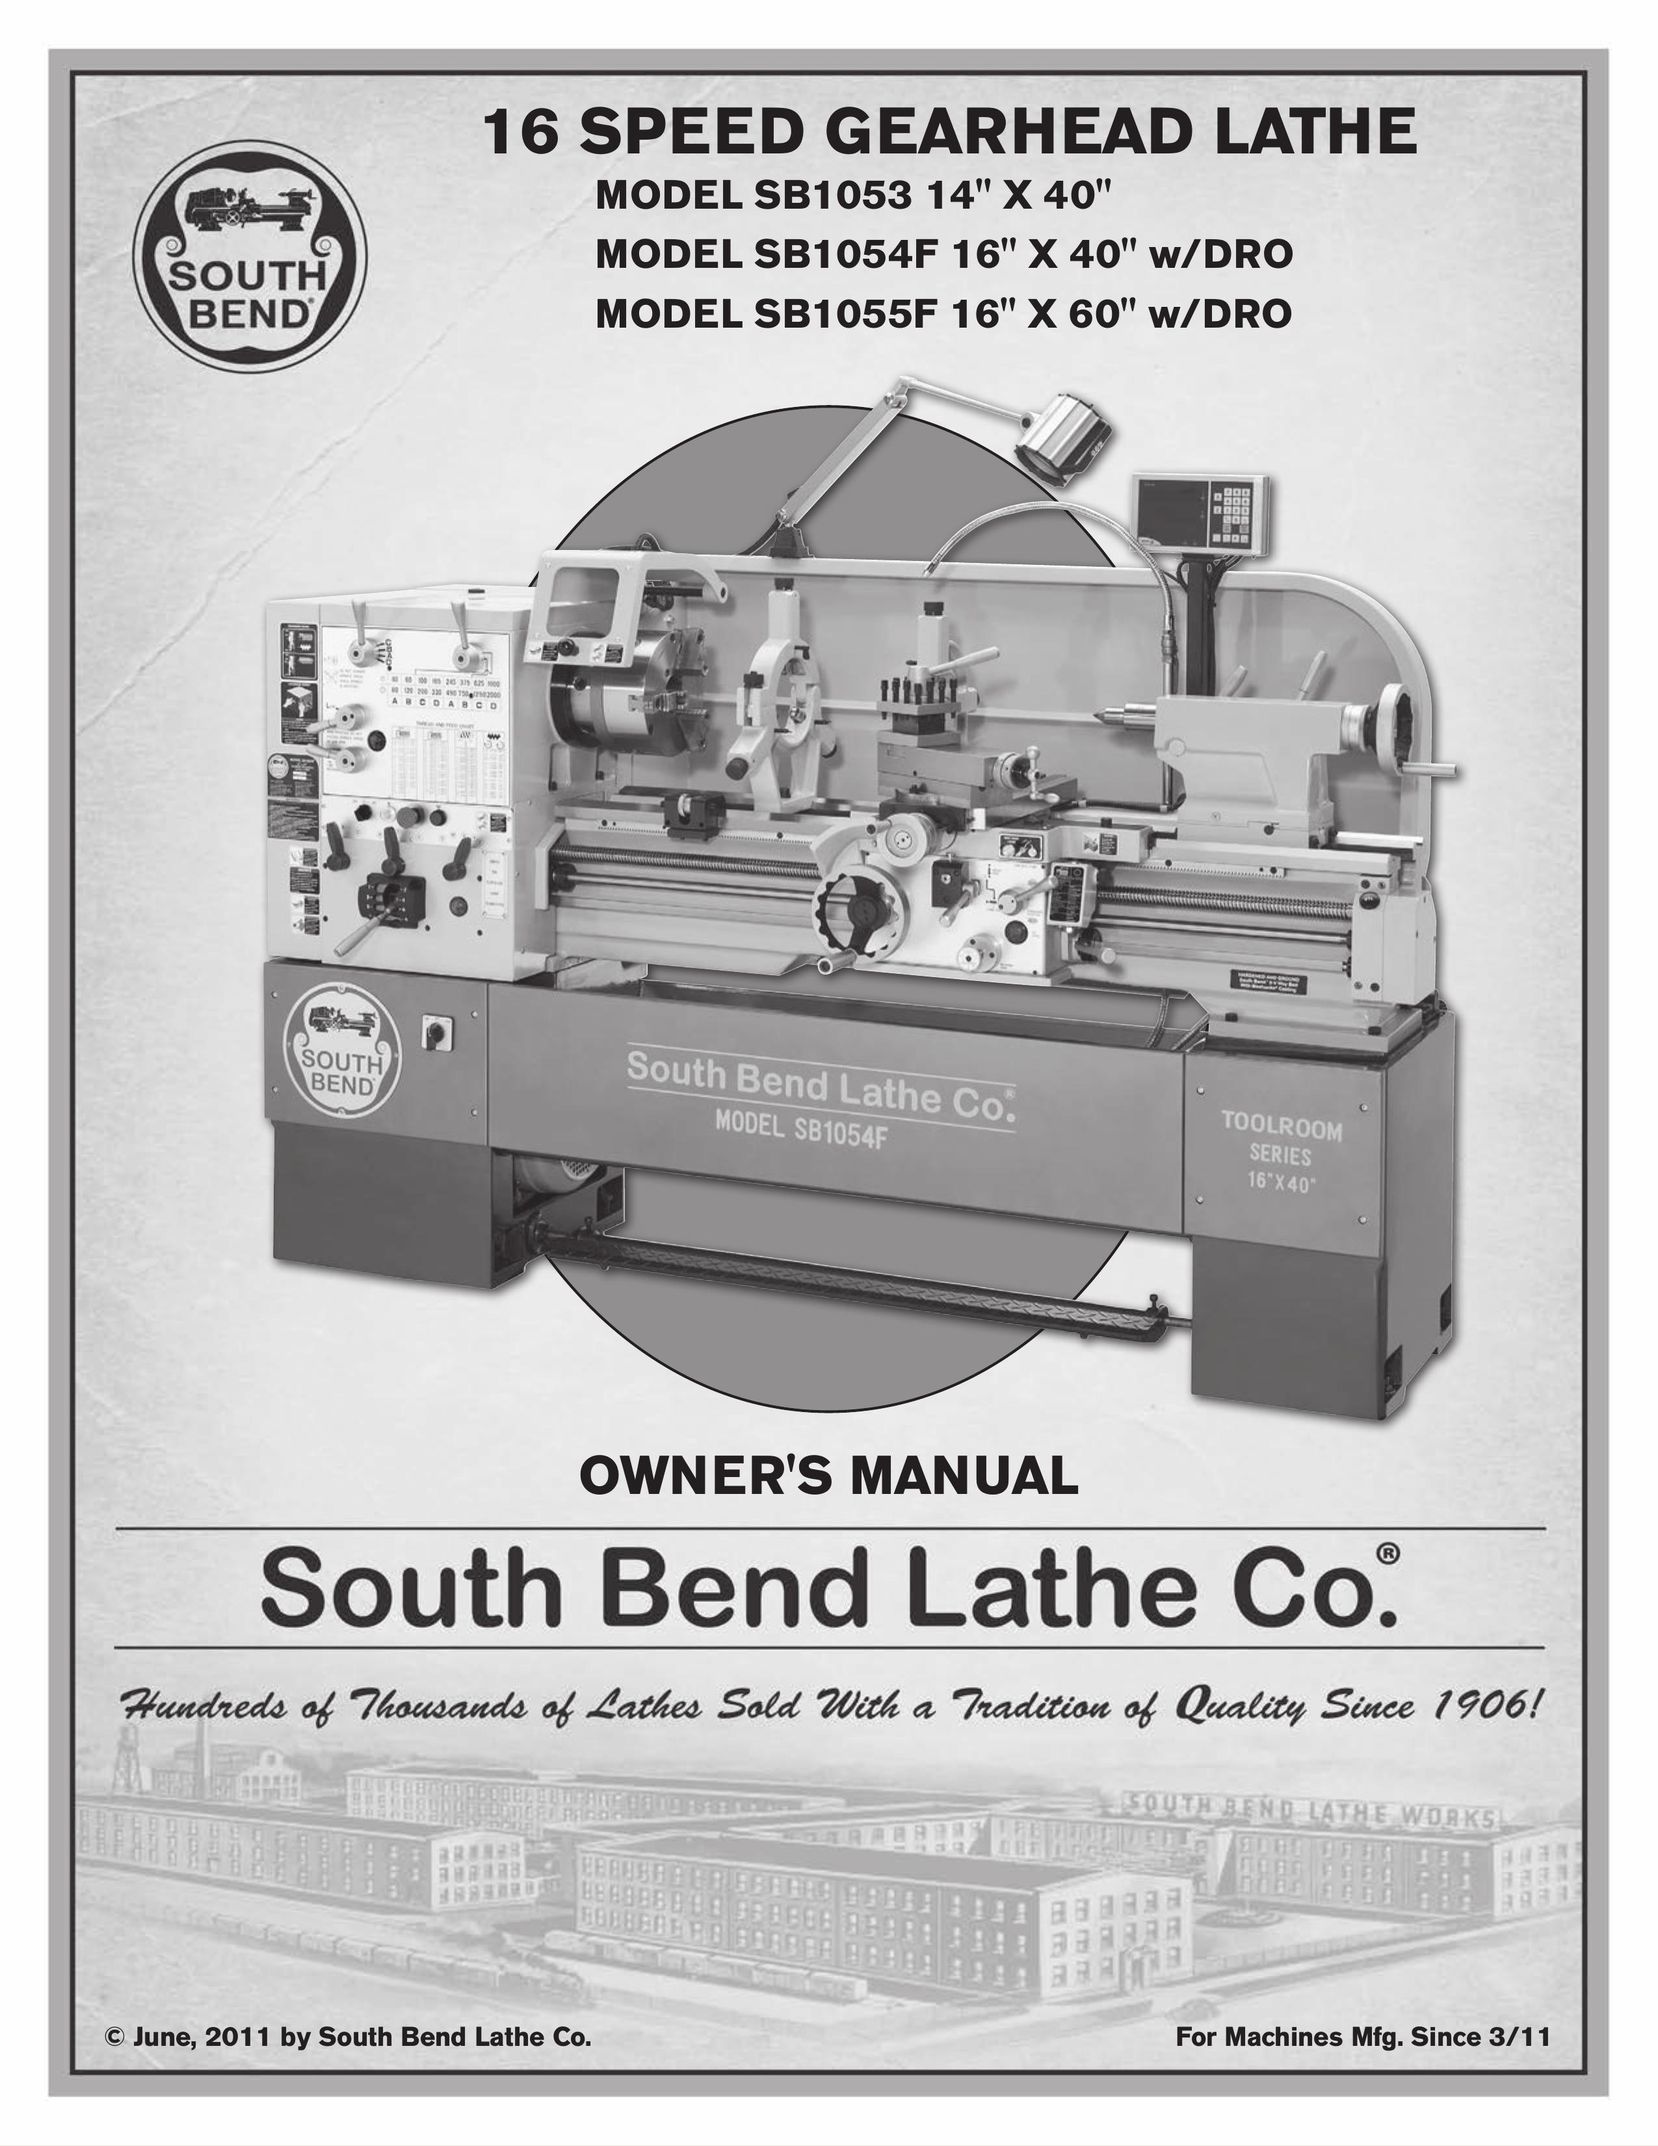 Southbend SB1054F 16" X 40" w/DRO Lathe User Manual